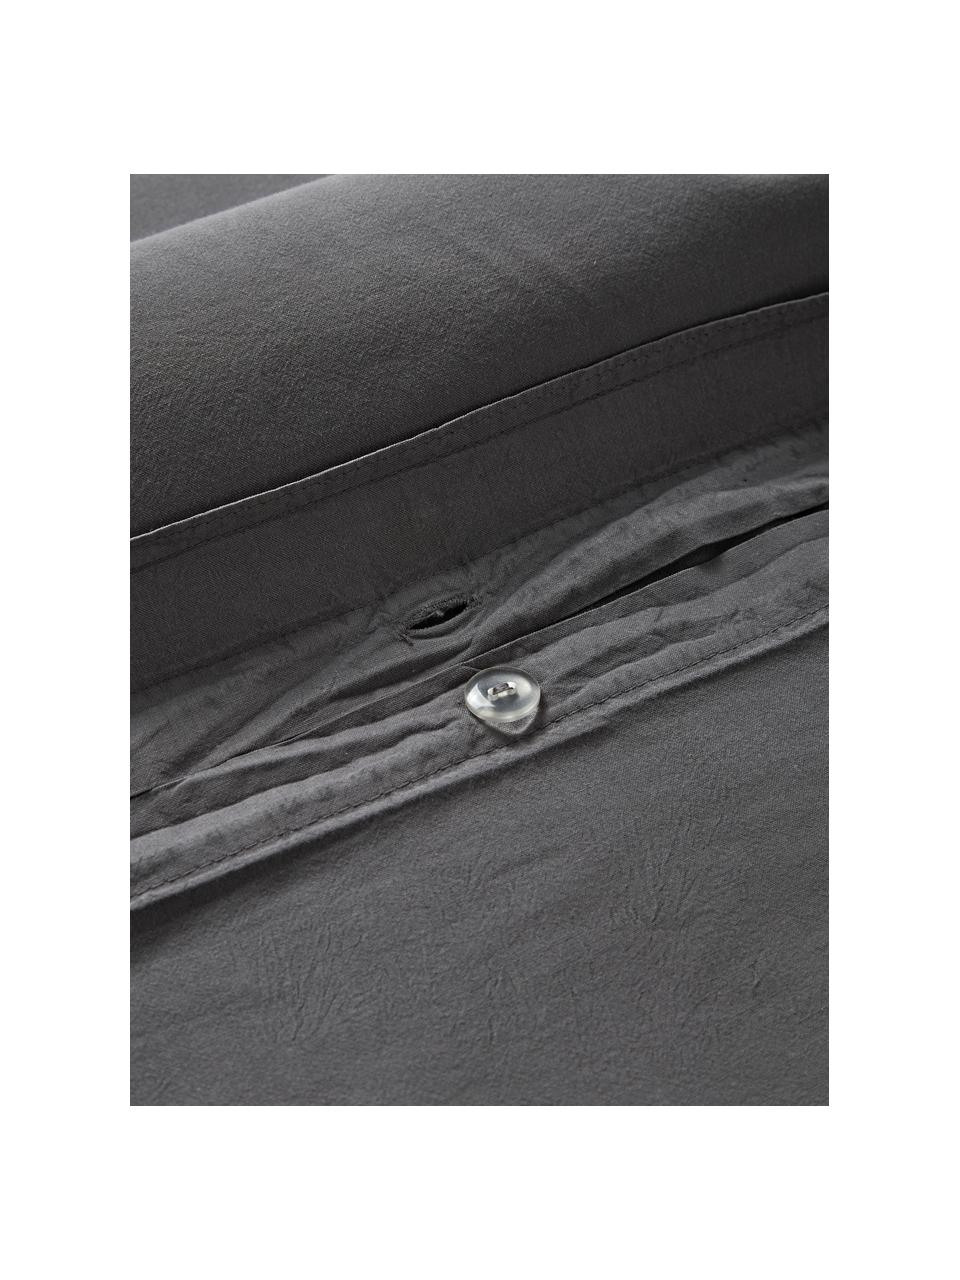 Poszewka na poduszkę z bawełny Darlyn, Ciemny szary, S 40 x D 80 cm